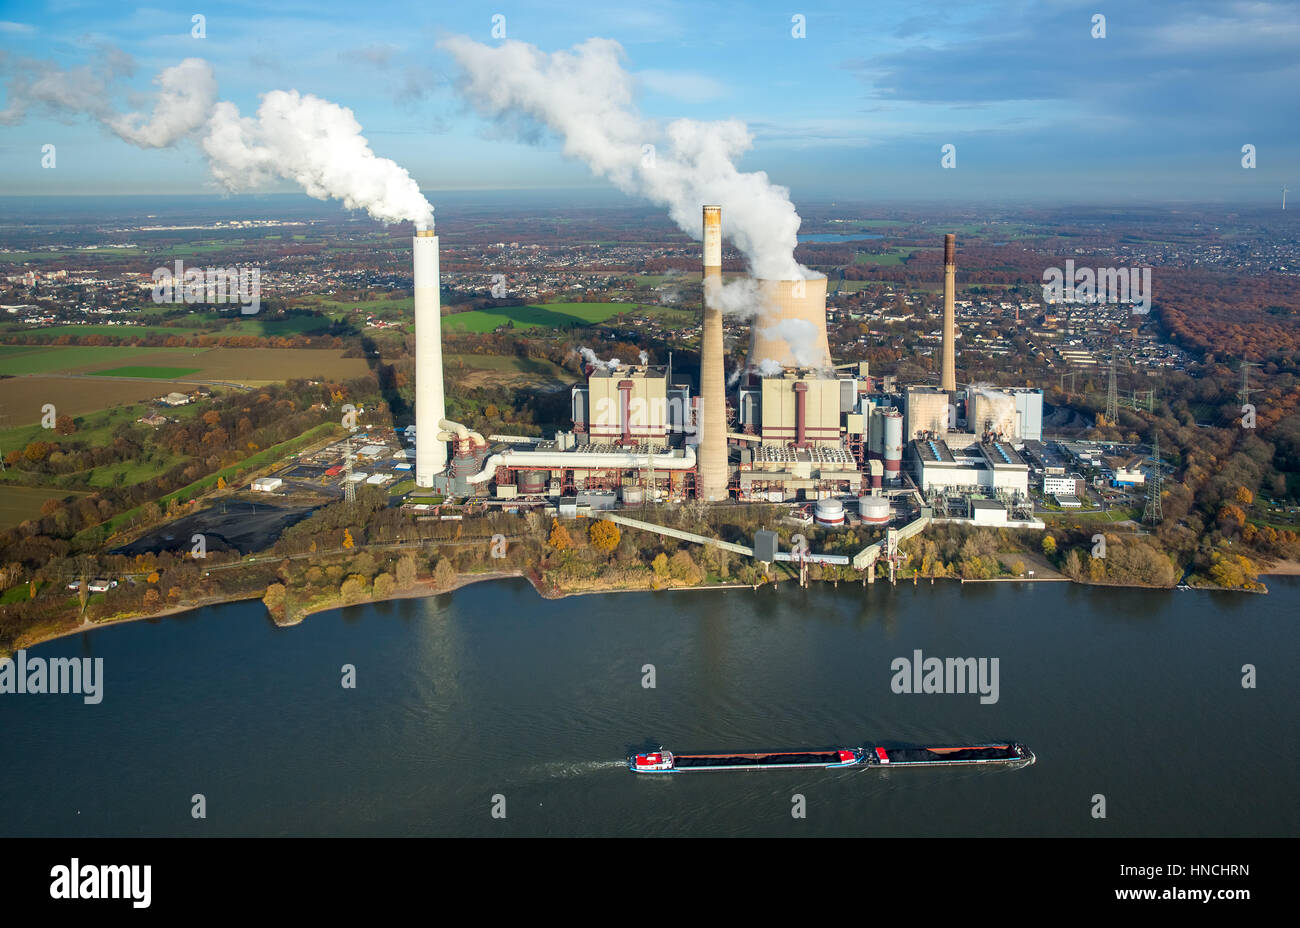 Kohle-Kraftwerk Voerede, Steag Energy Services GmbH, Frachtschiff auf dem Rhein, Voerde, Ruhrgebiet, Nordrhein-Westfalen Stockfoto